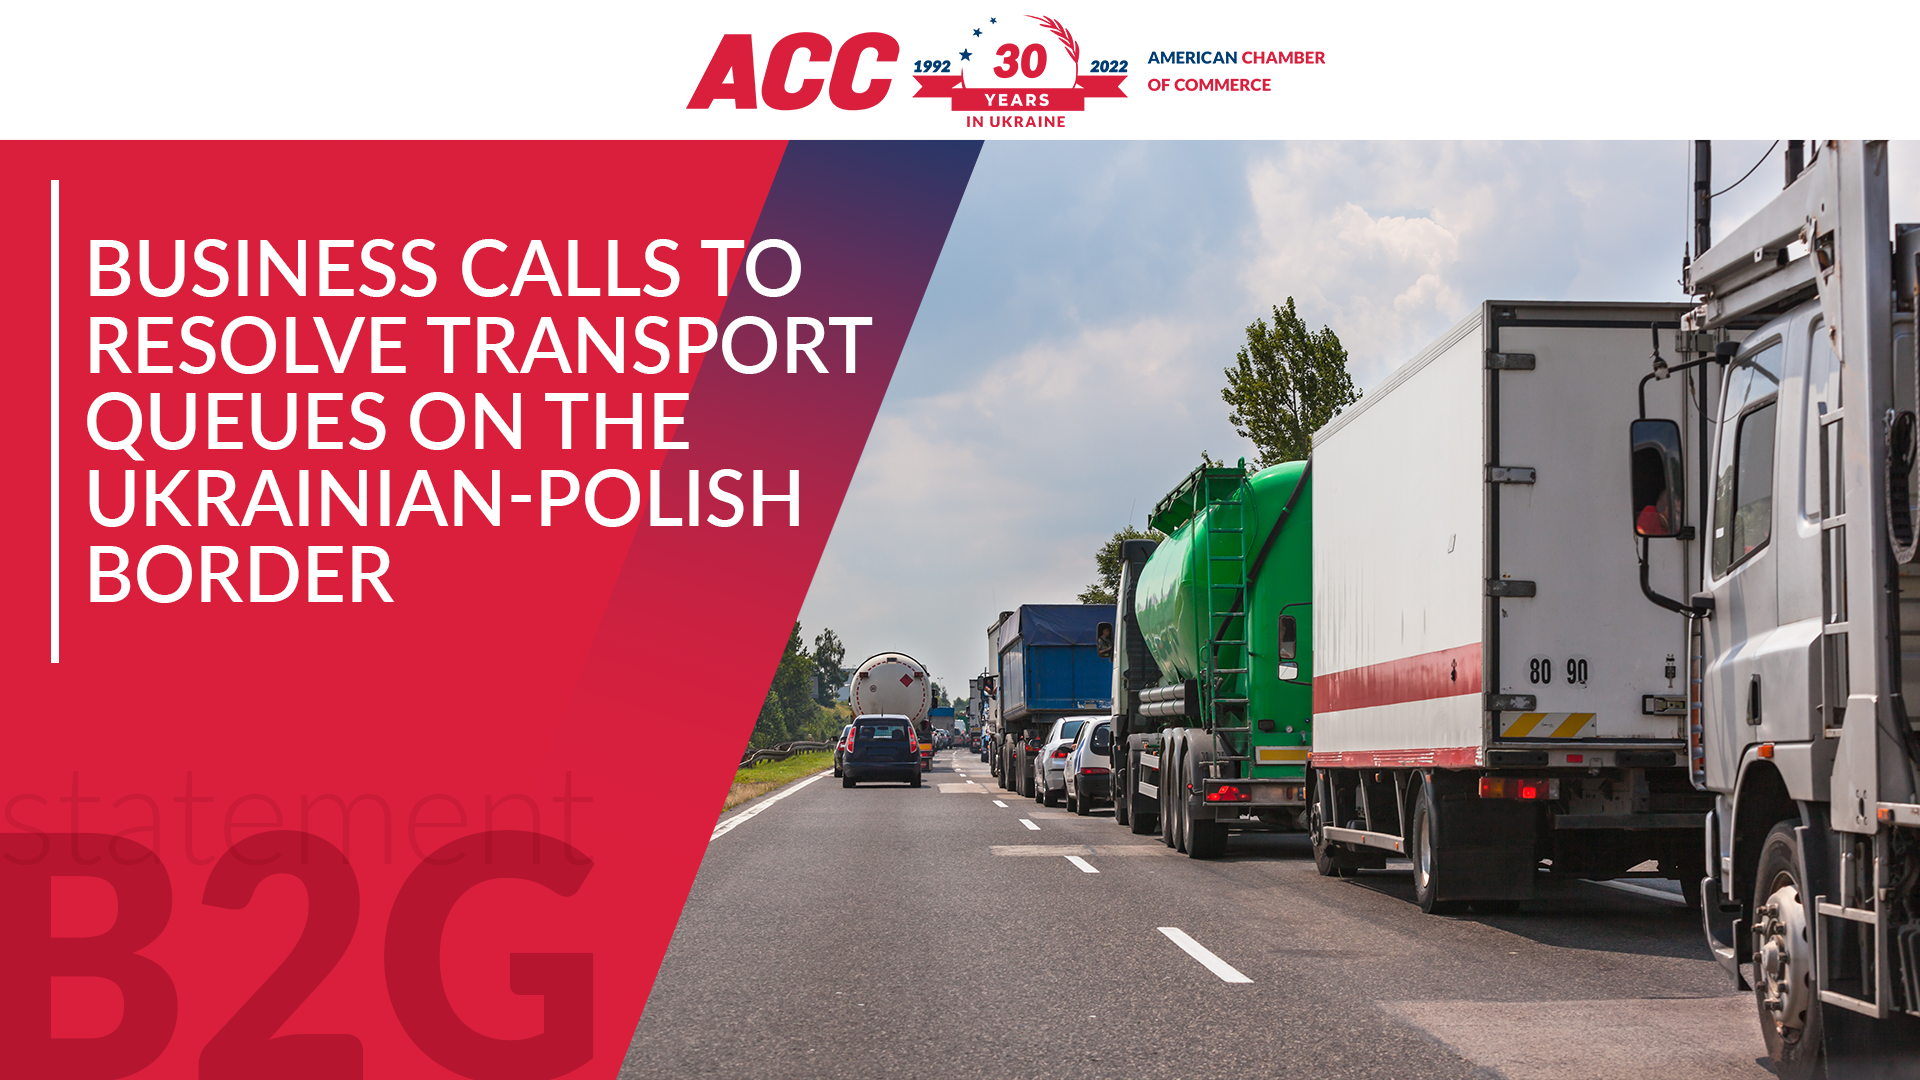 Бізнес закликає врегулювати питання транспортних черг на українсько-польському кордоні